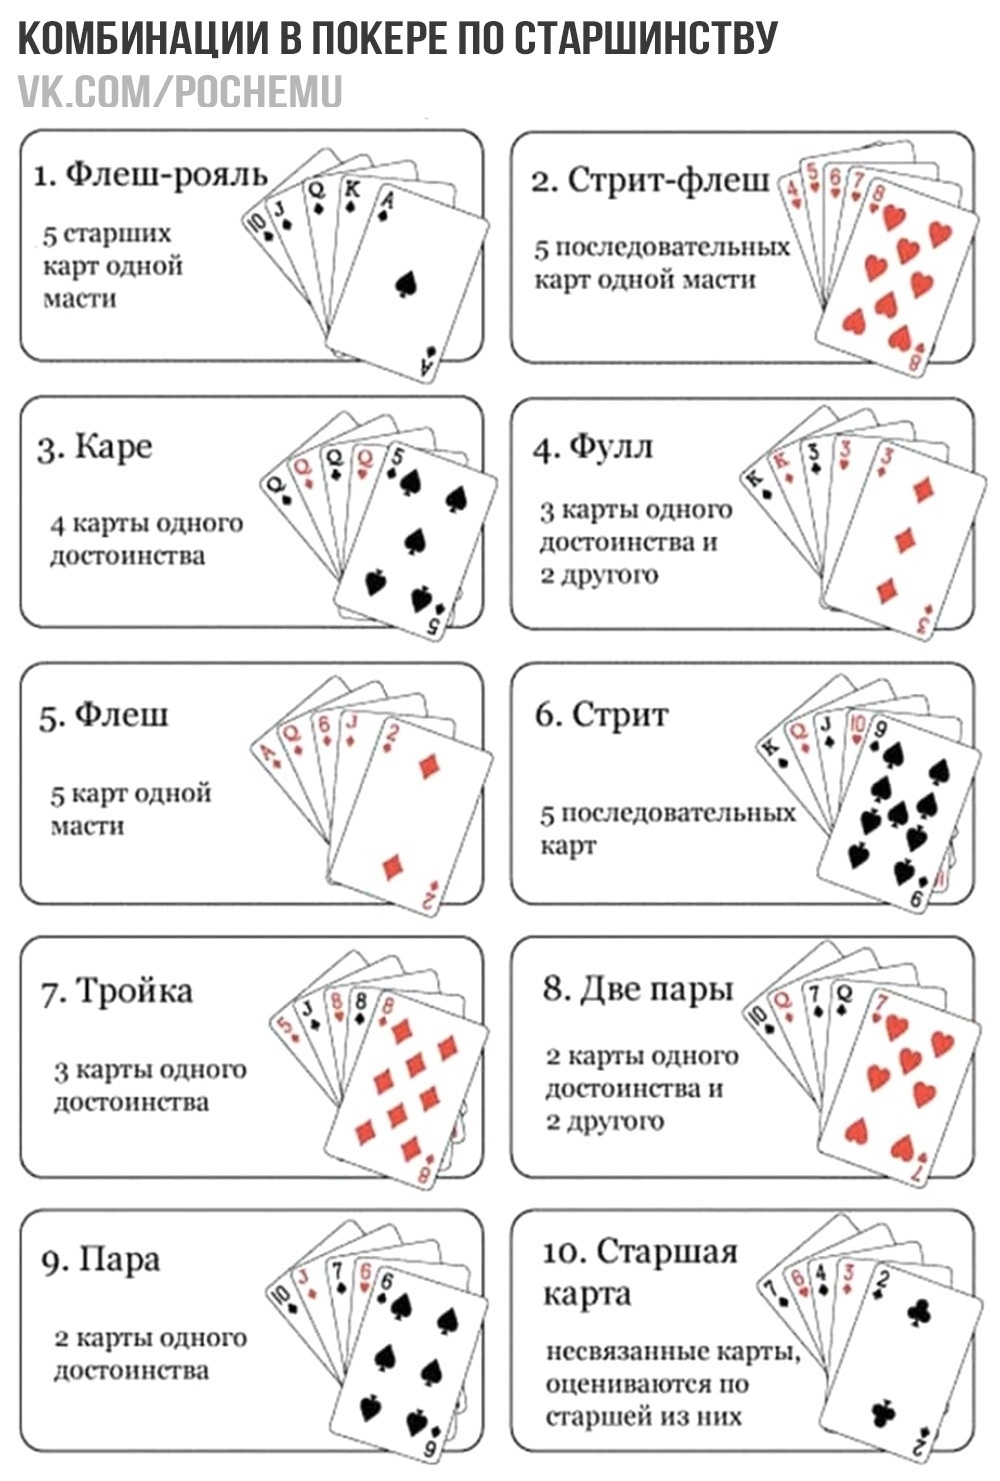 Игра в карты переводной правила. Игра в Покер правила для начинающих комбинации. Комбинации в покере по старшинству. Комбинации в покере 36 карт. Стрит флеш в покере комбинация.